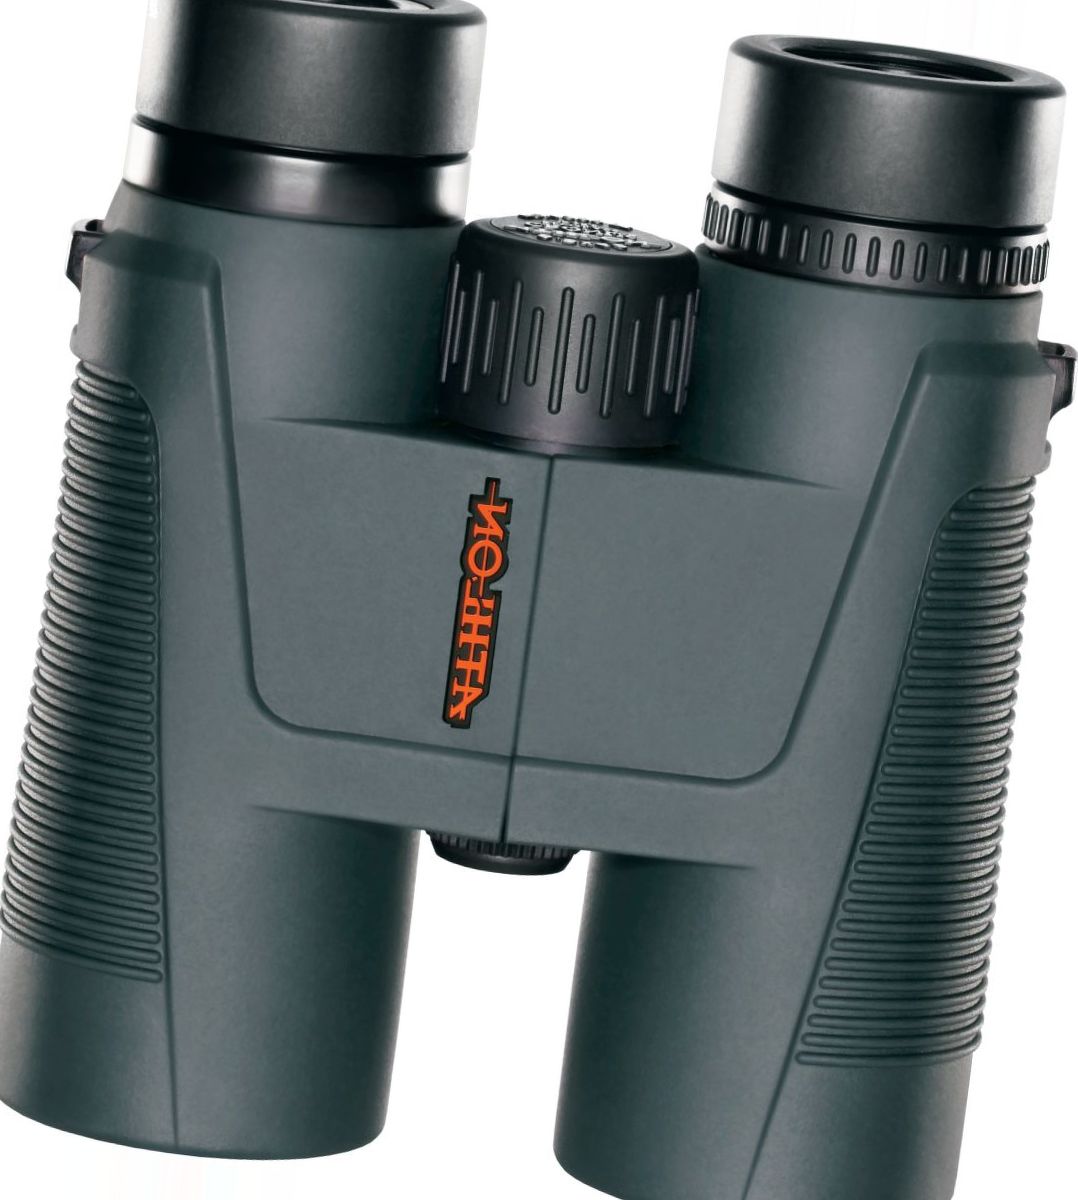 Athlon Talos Binoculars